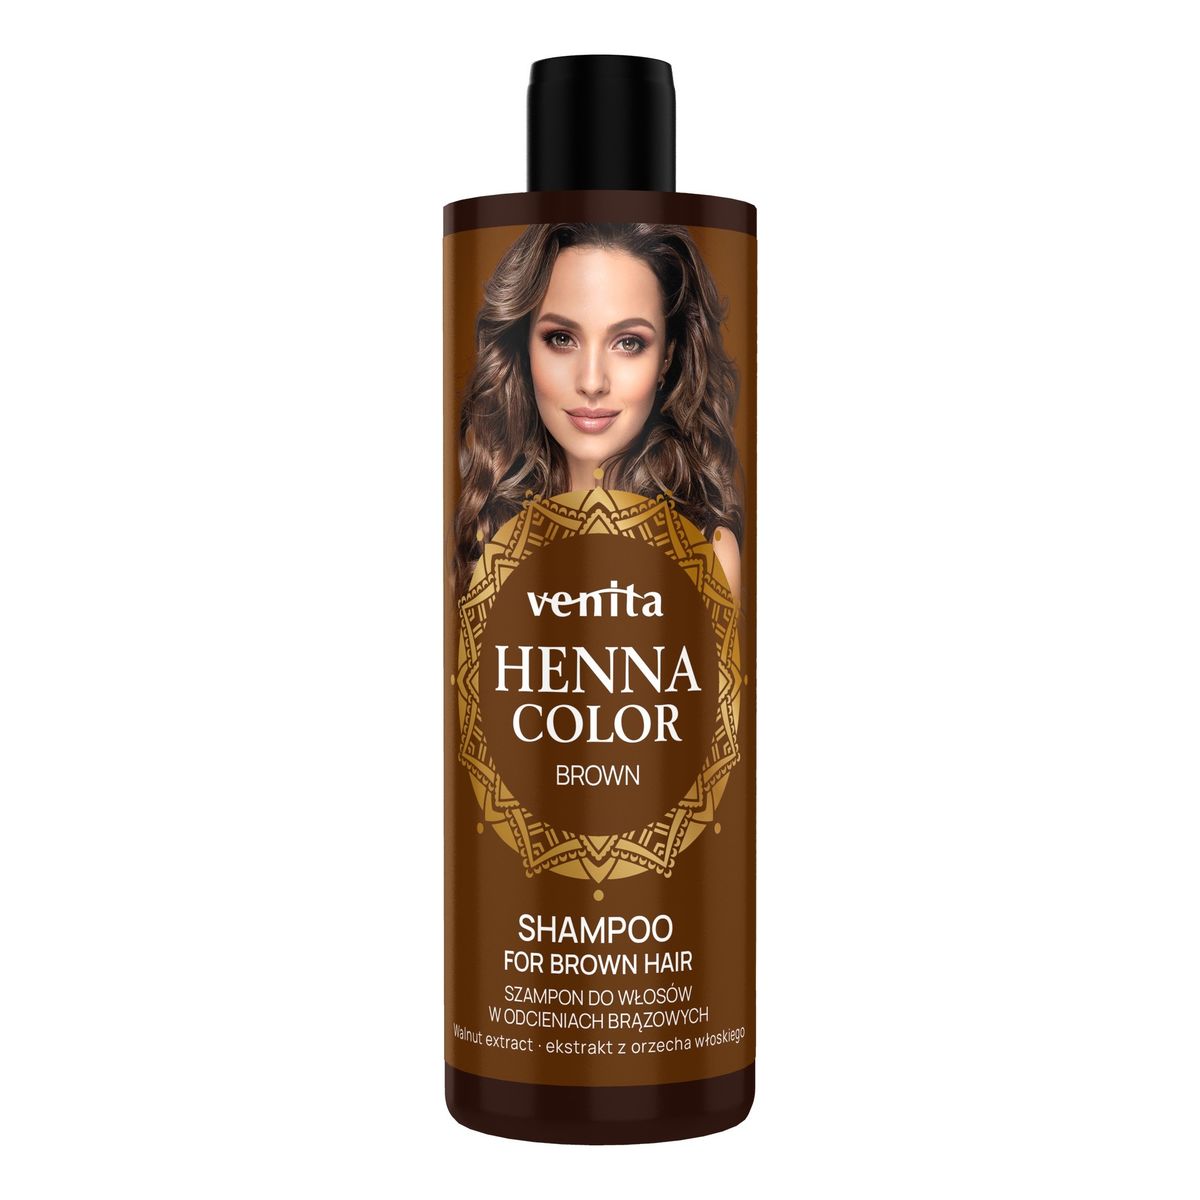 Venita Henna color szampon do włosów w odcieniach brązowych-brown 300ml